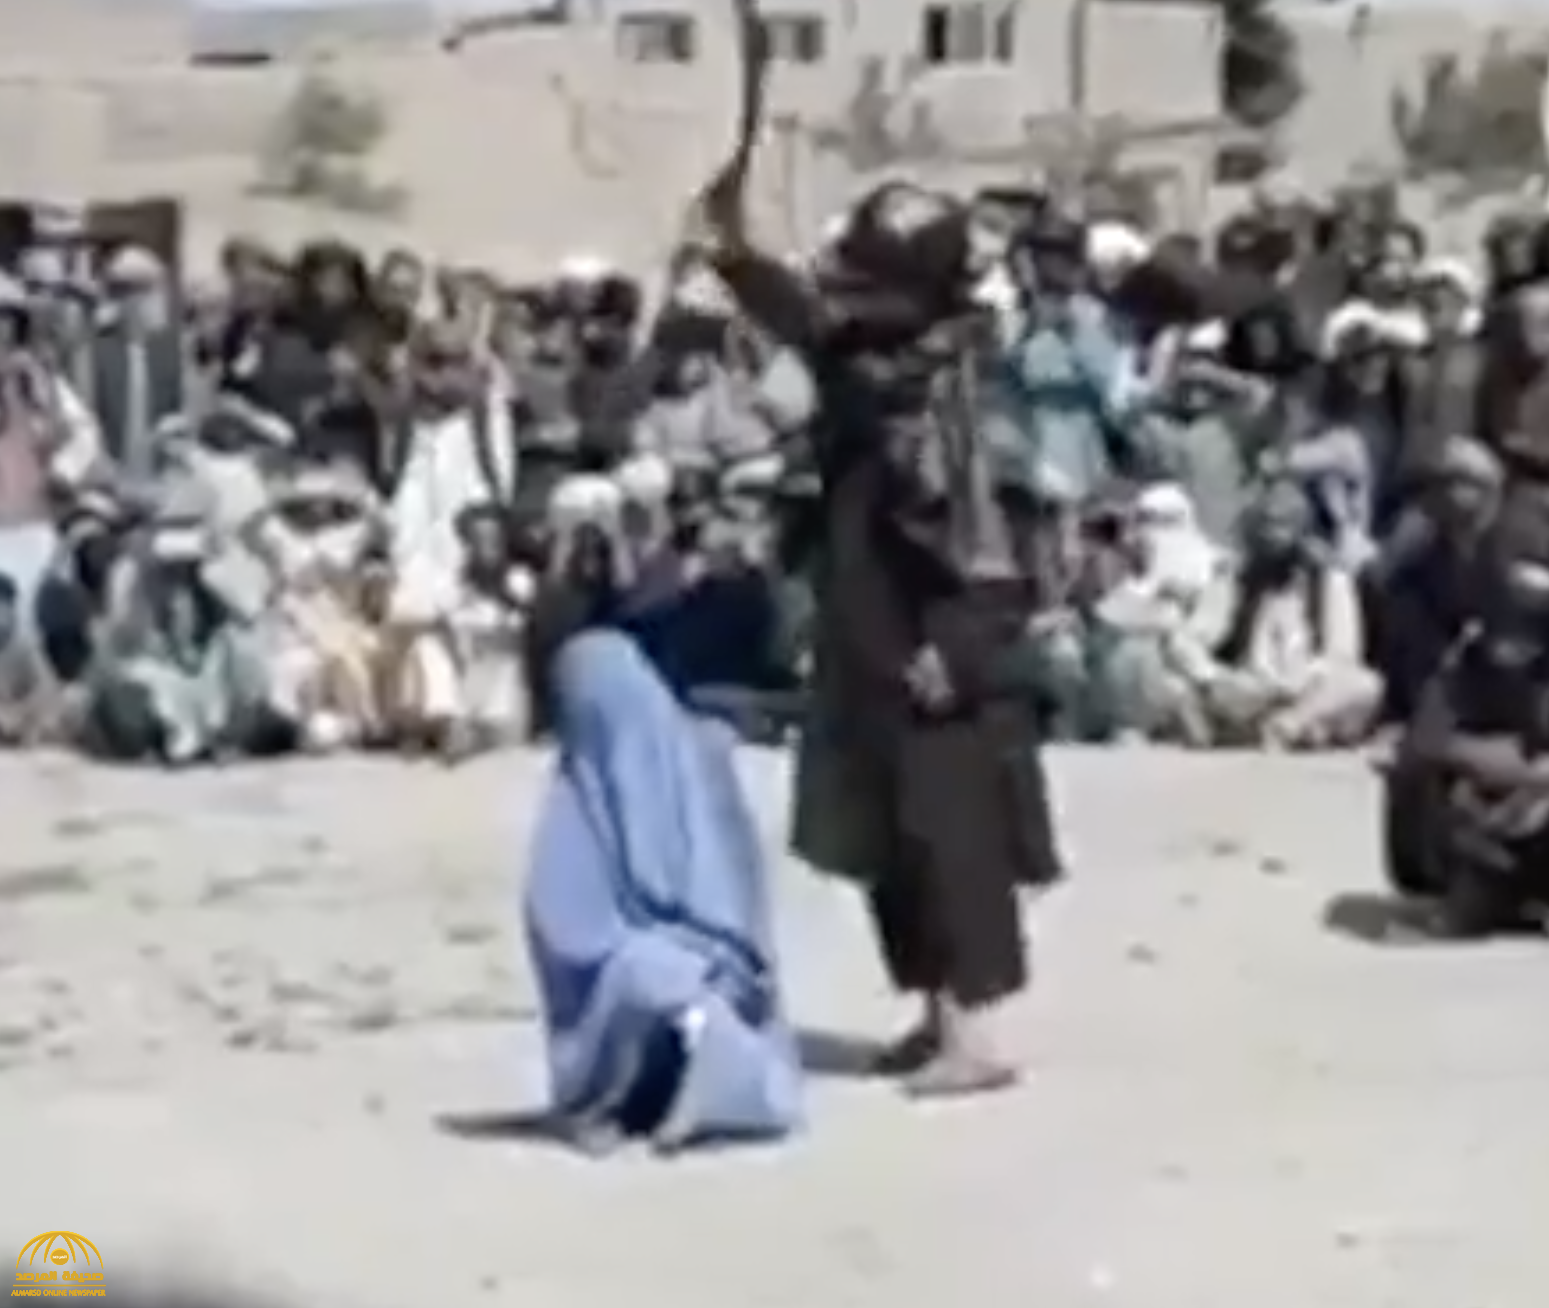 شاهد: جماعة طالبان الإسلامية المتشددة تجلد امرأة بطريقة عنيفة في أفغانستان